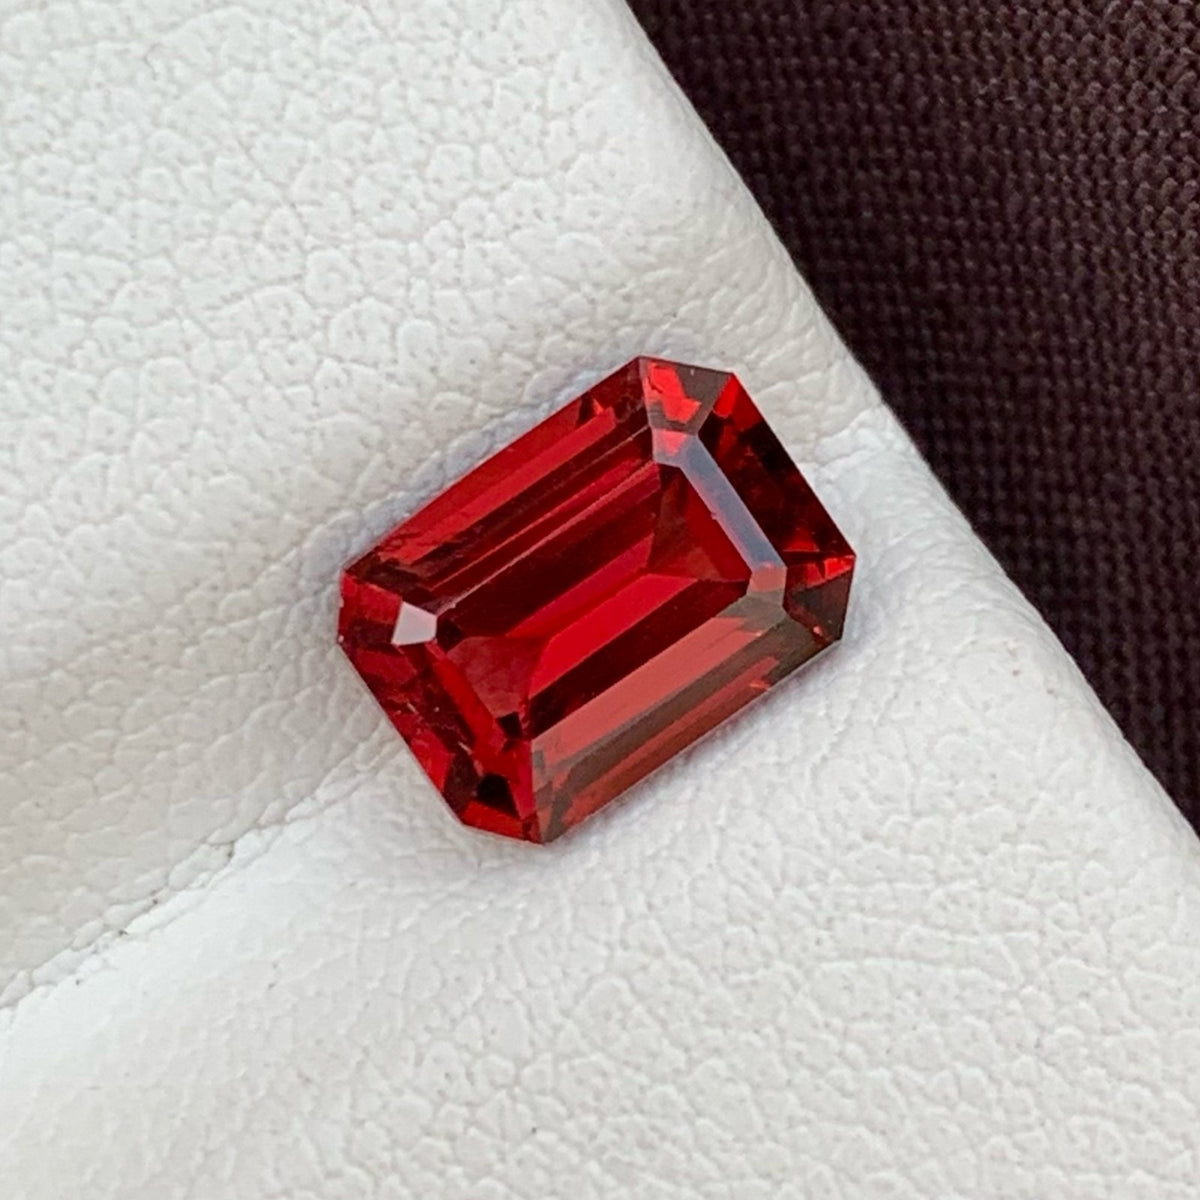 Bright Red Garnet Loose Gemstone From Malawi